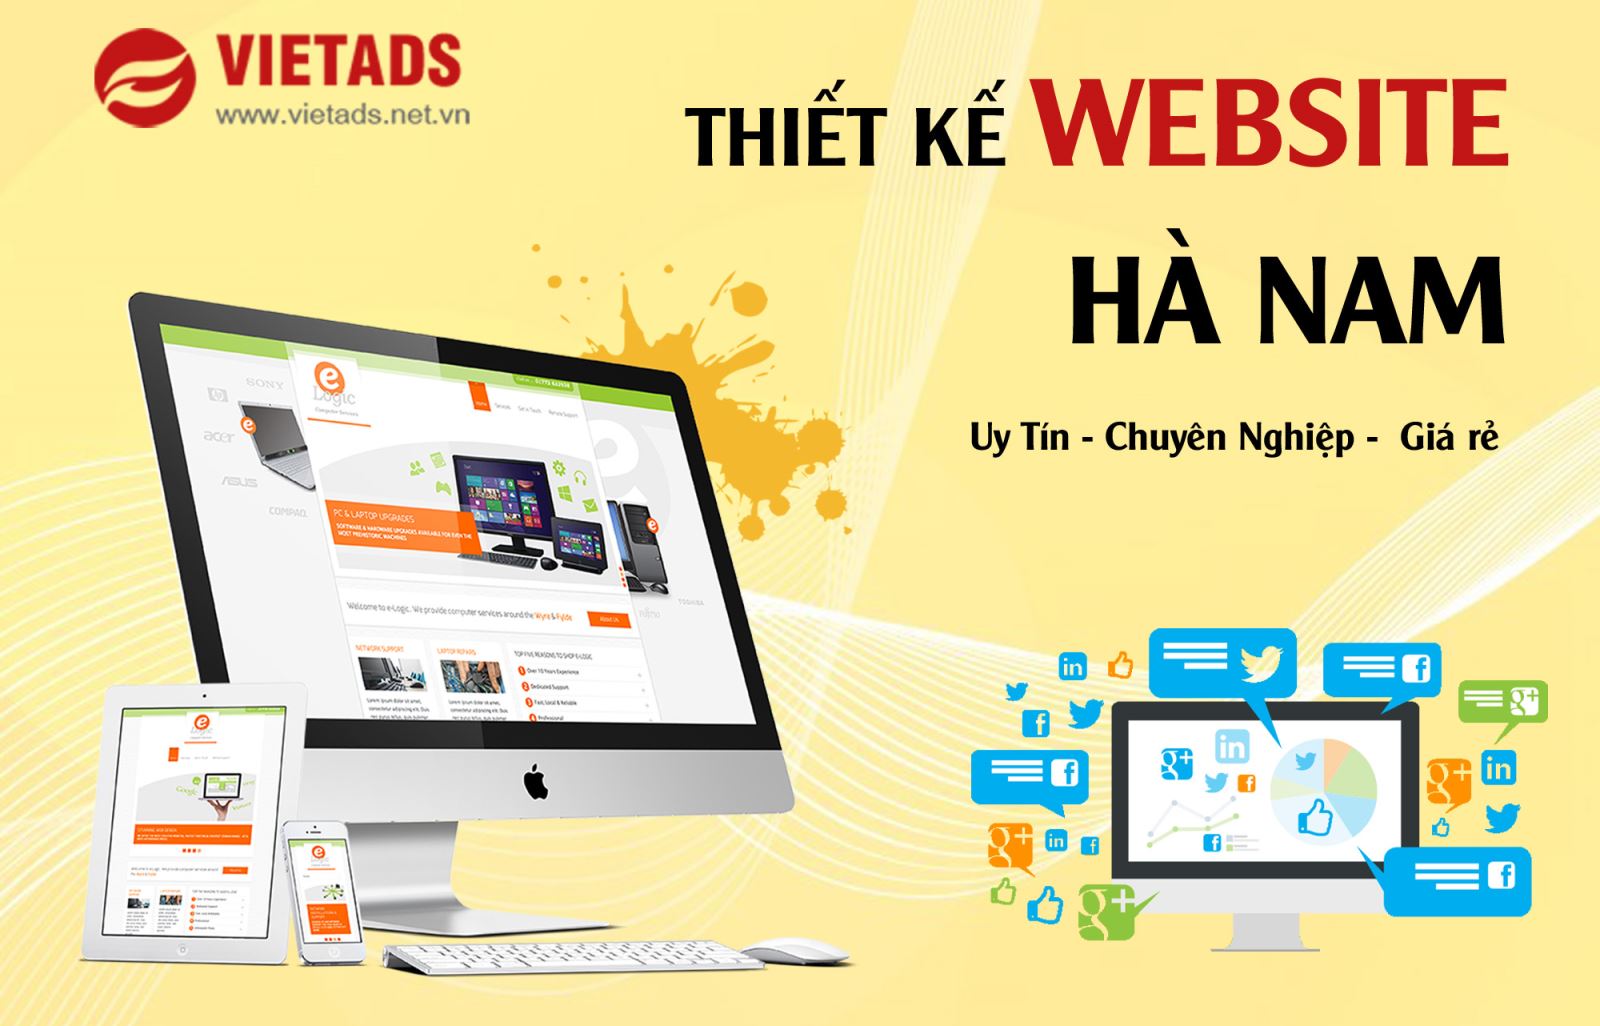 VIETADS - Thiết kế website tại Hà Nam uy tín, chất lượng